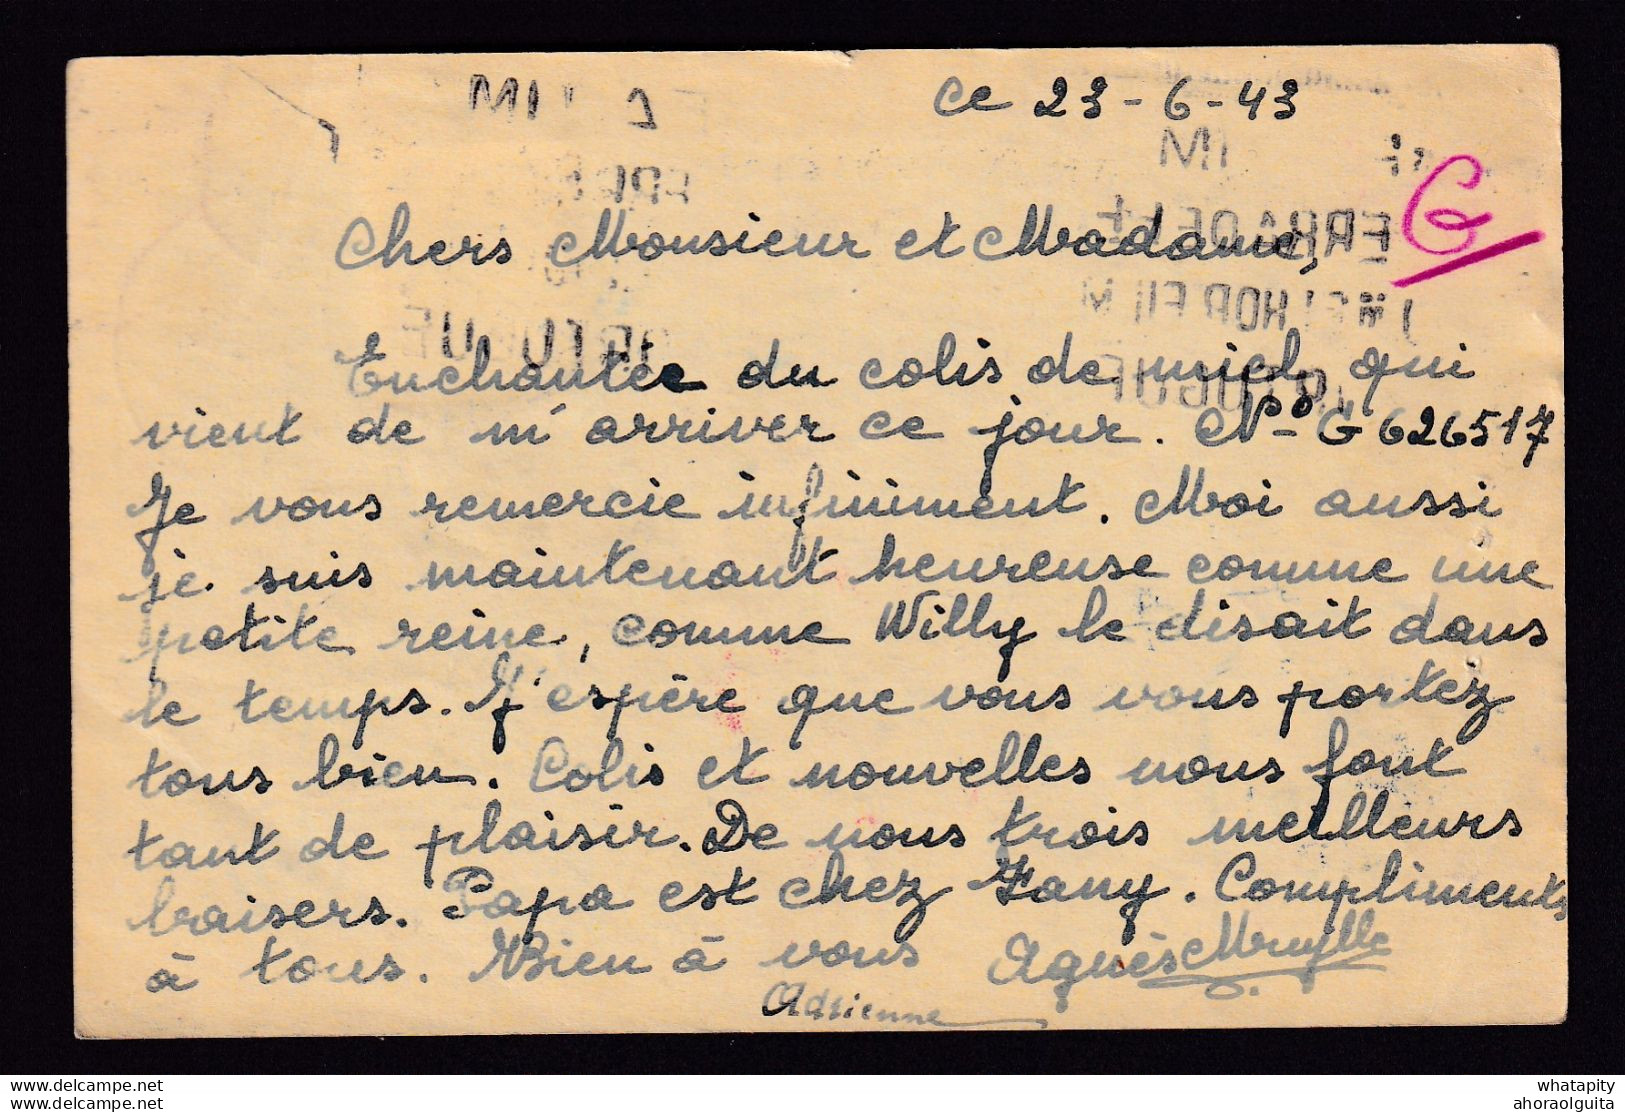 DDBB 022 -- Entier Petit Sceau ZWEVEZELE 1943 Vers OCA Lisbonne Pour Le CONGO - Censures Allemandes Et Anglaises - Guerre 40-45 (Lettres & Documents)